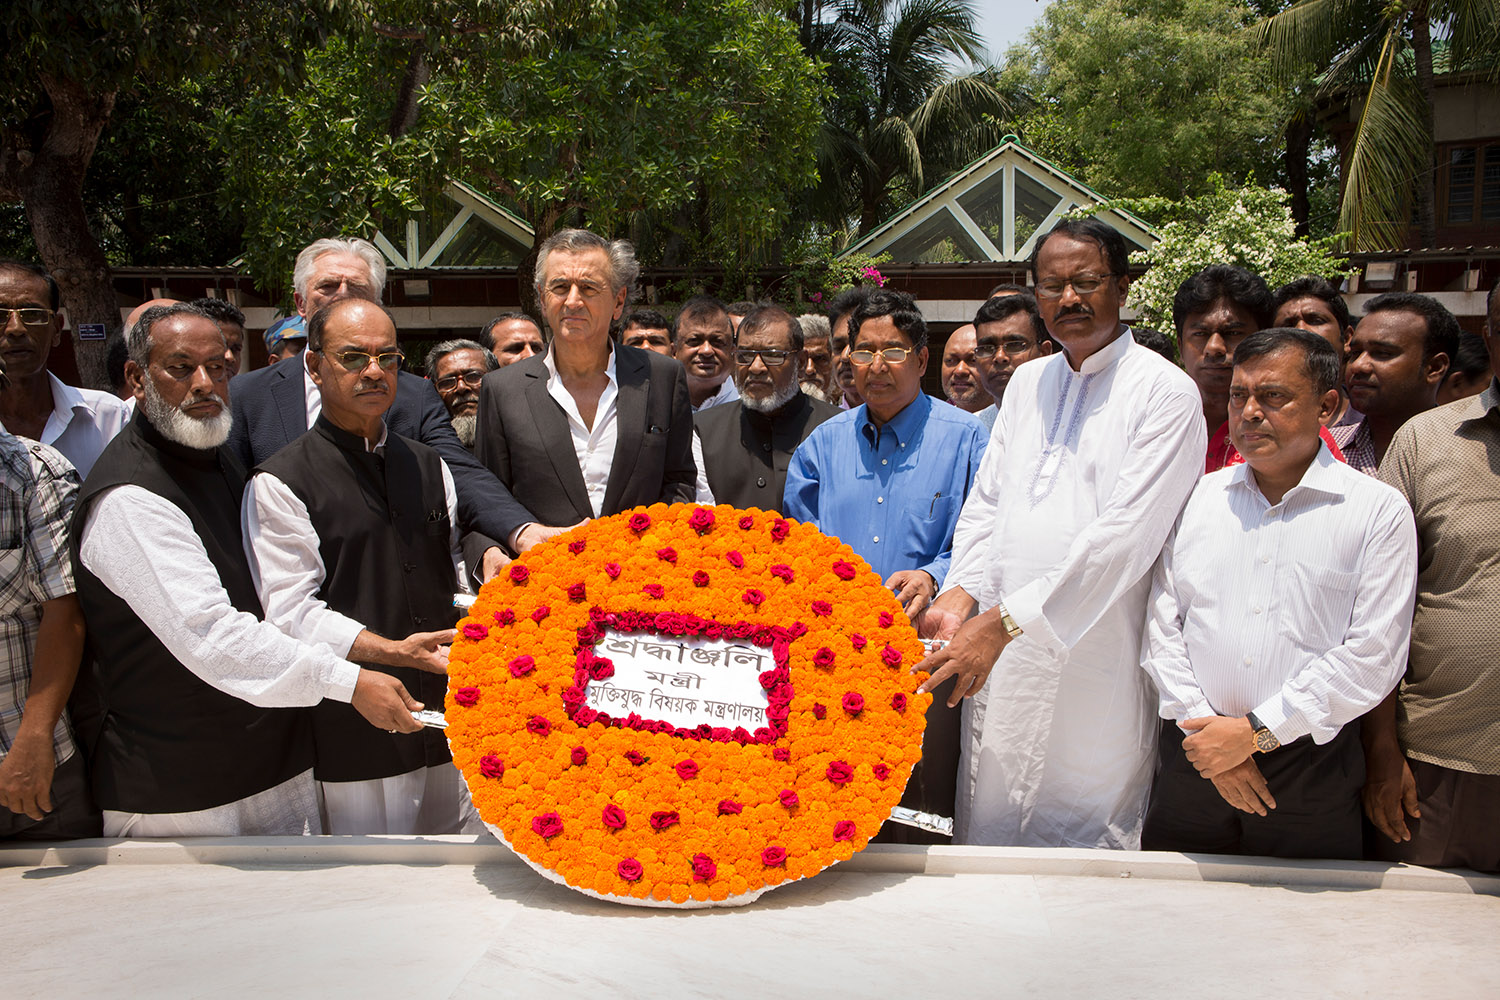 Bernard-Henri Lévy lors de l'hommage à Mujibur Rahman, ancien Premier Ministre du Bangladesh, Gopalganj. Le philosophe est entouré par des bengladeshis qui portent une couronne de fleurs.